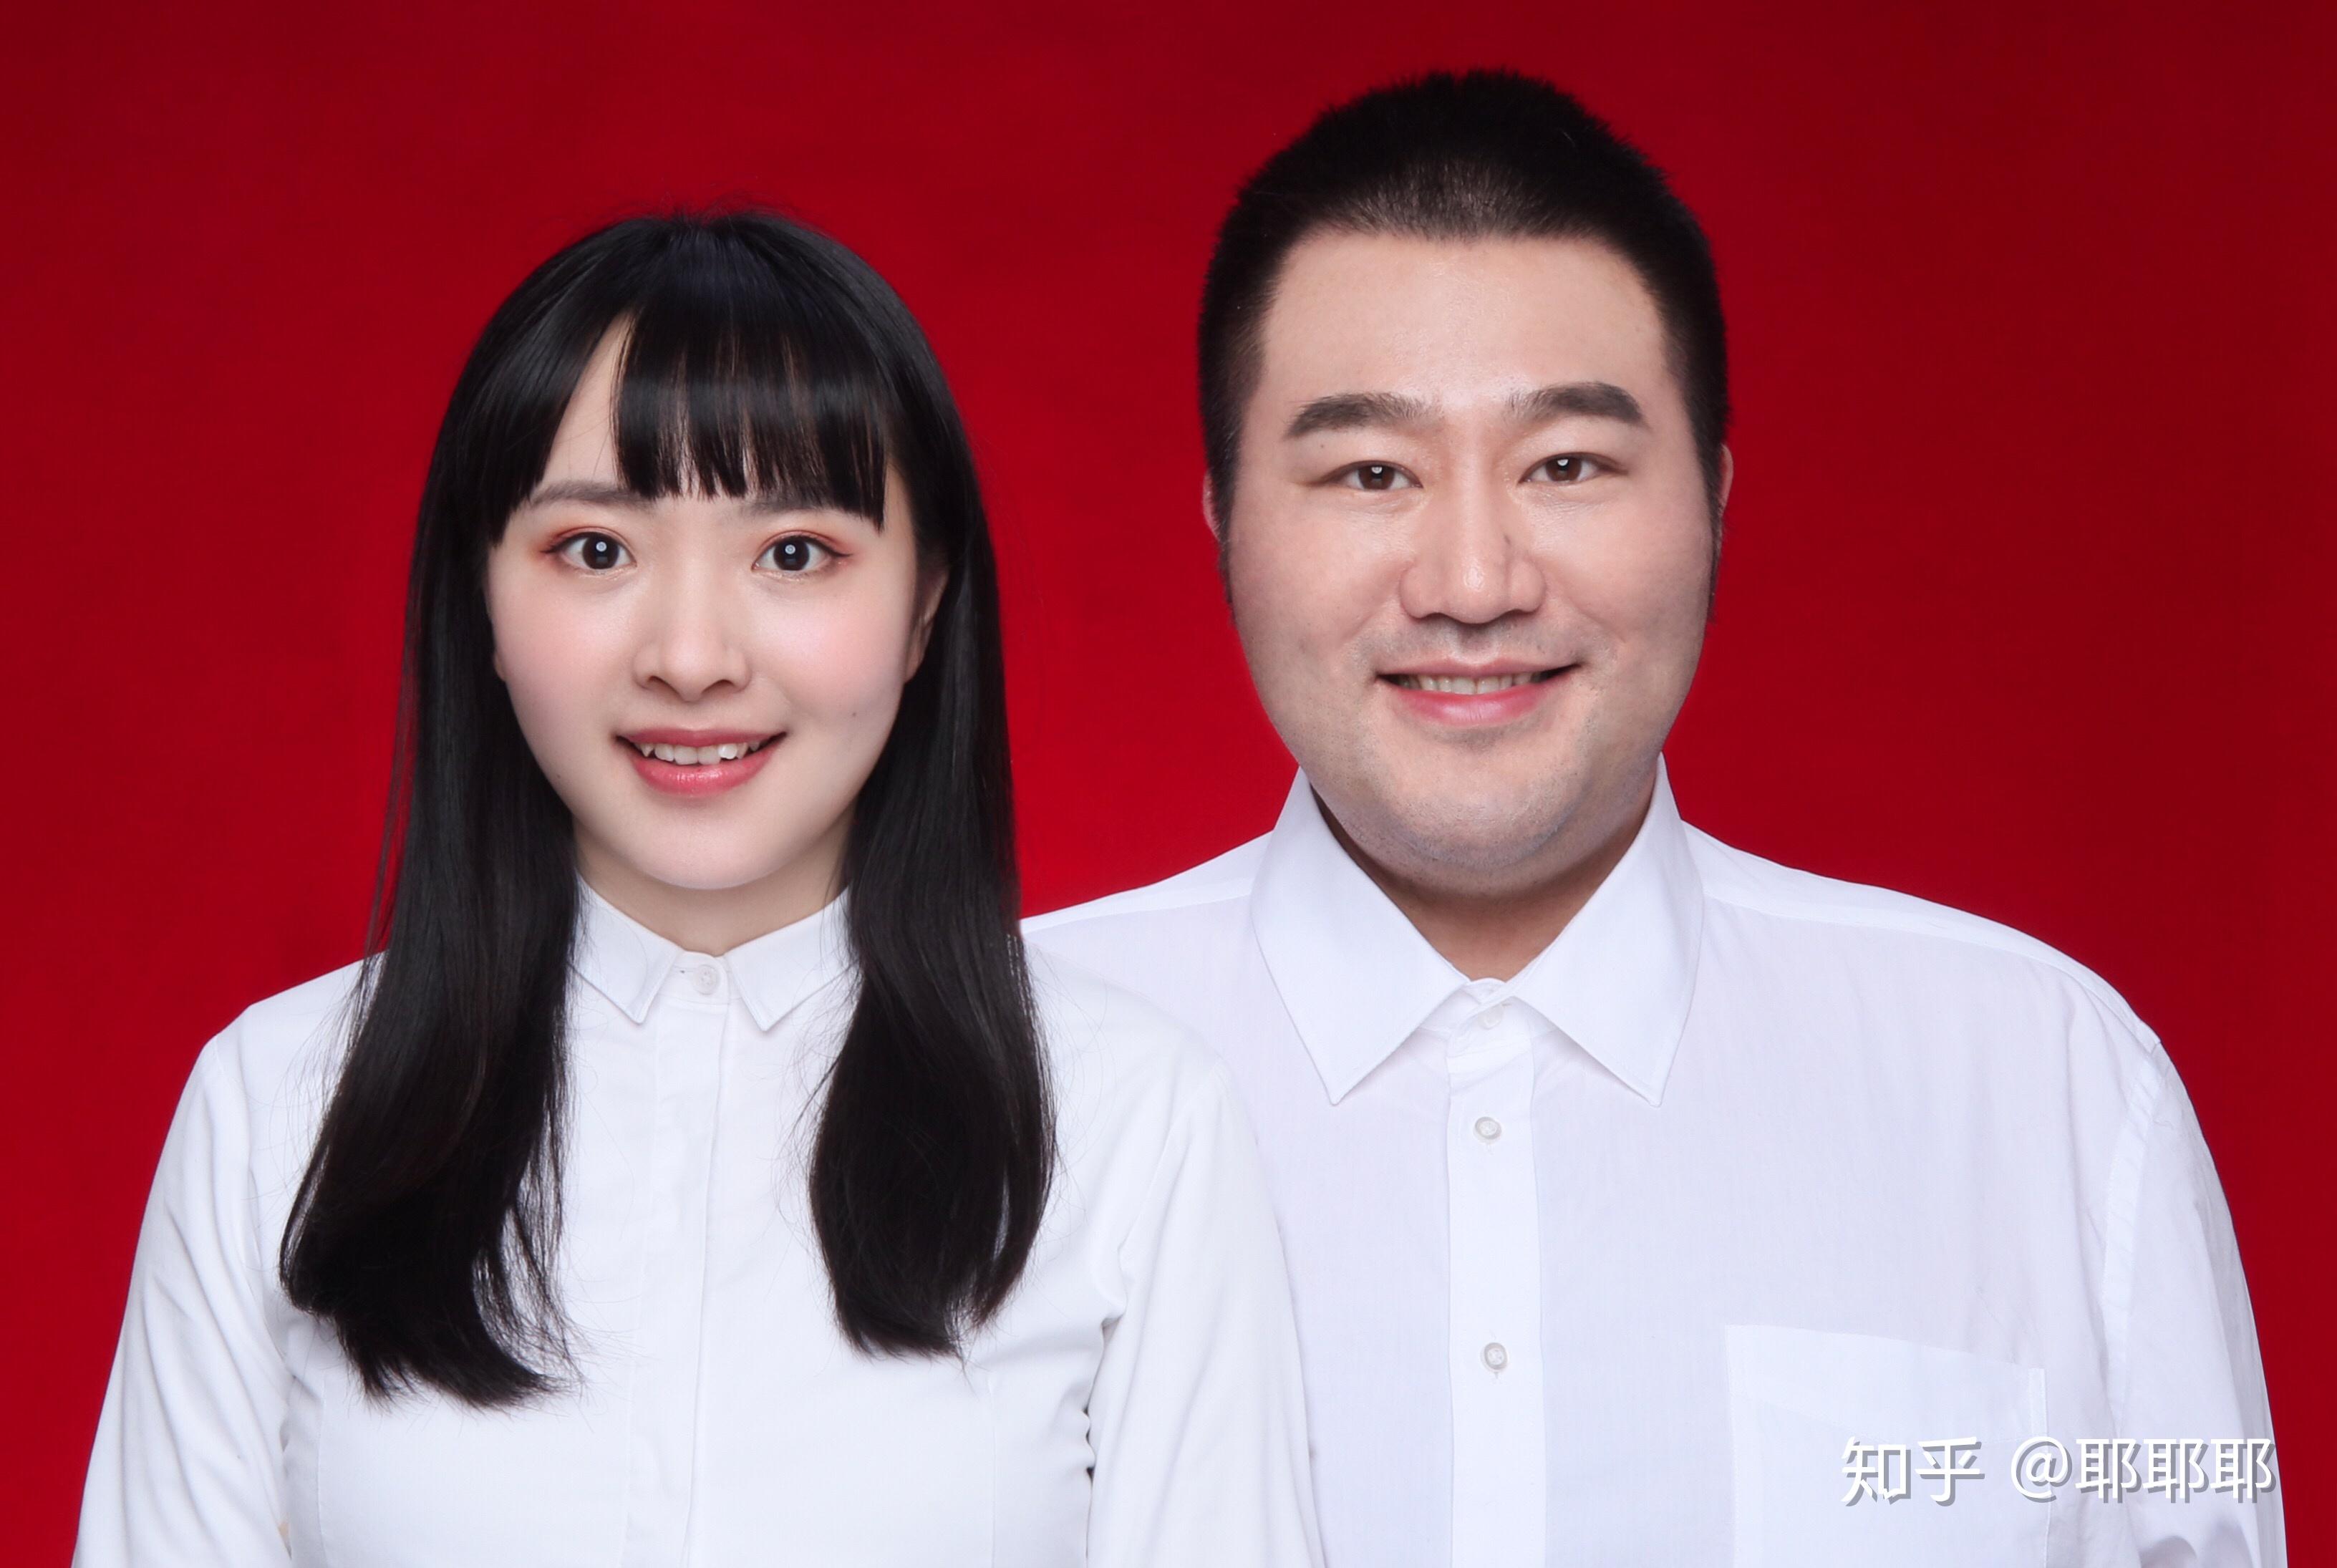 红白色520晒结婚证夫妻结婚情侣爱情领证照片520节日分享中文微信朋友圈 - 模板 - Canva可画